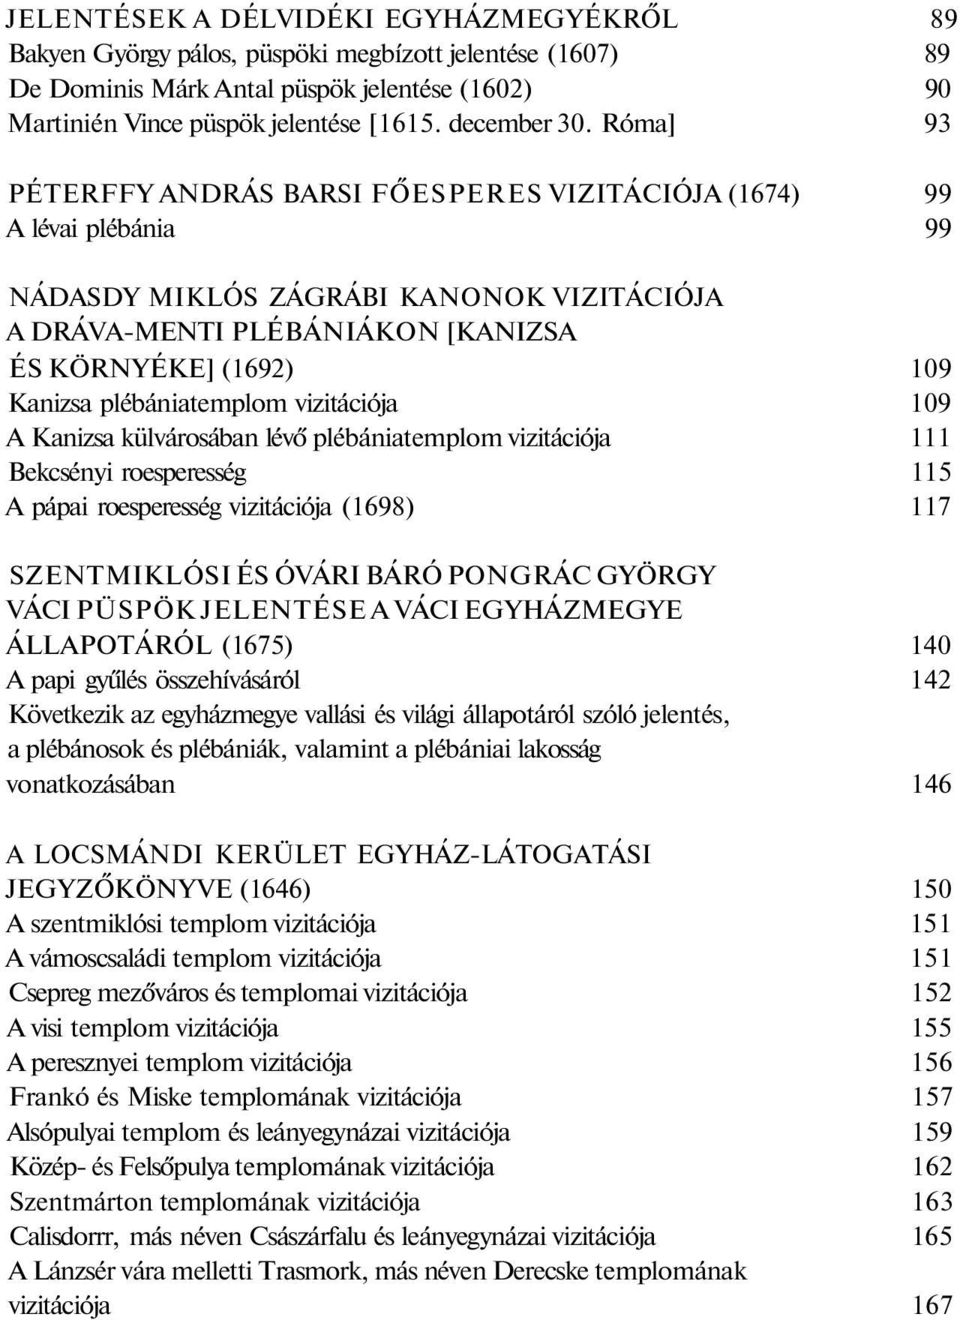 Róma] 93 PÉTERFFY ANDRÁS BARSI FŐESPERES VIZITÁCIÓJA (1674) 99 A lévai plébánia 99 NÁDASDY MIKLÓS ZÁGRÁBI KANONOK VIZITÁCIÓJA A DRÁVA-MENTI PLÉBÁNIÁKON [KANIZSA ÉS KÖRNYÉKE] (1692) 109 Kanizsa